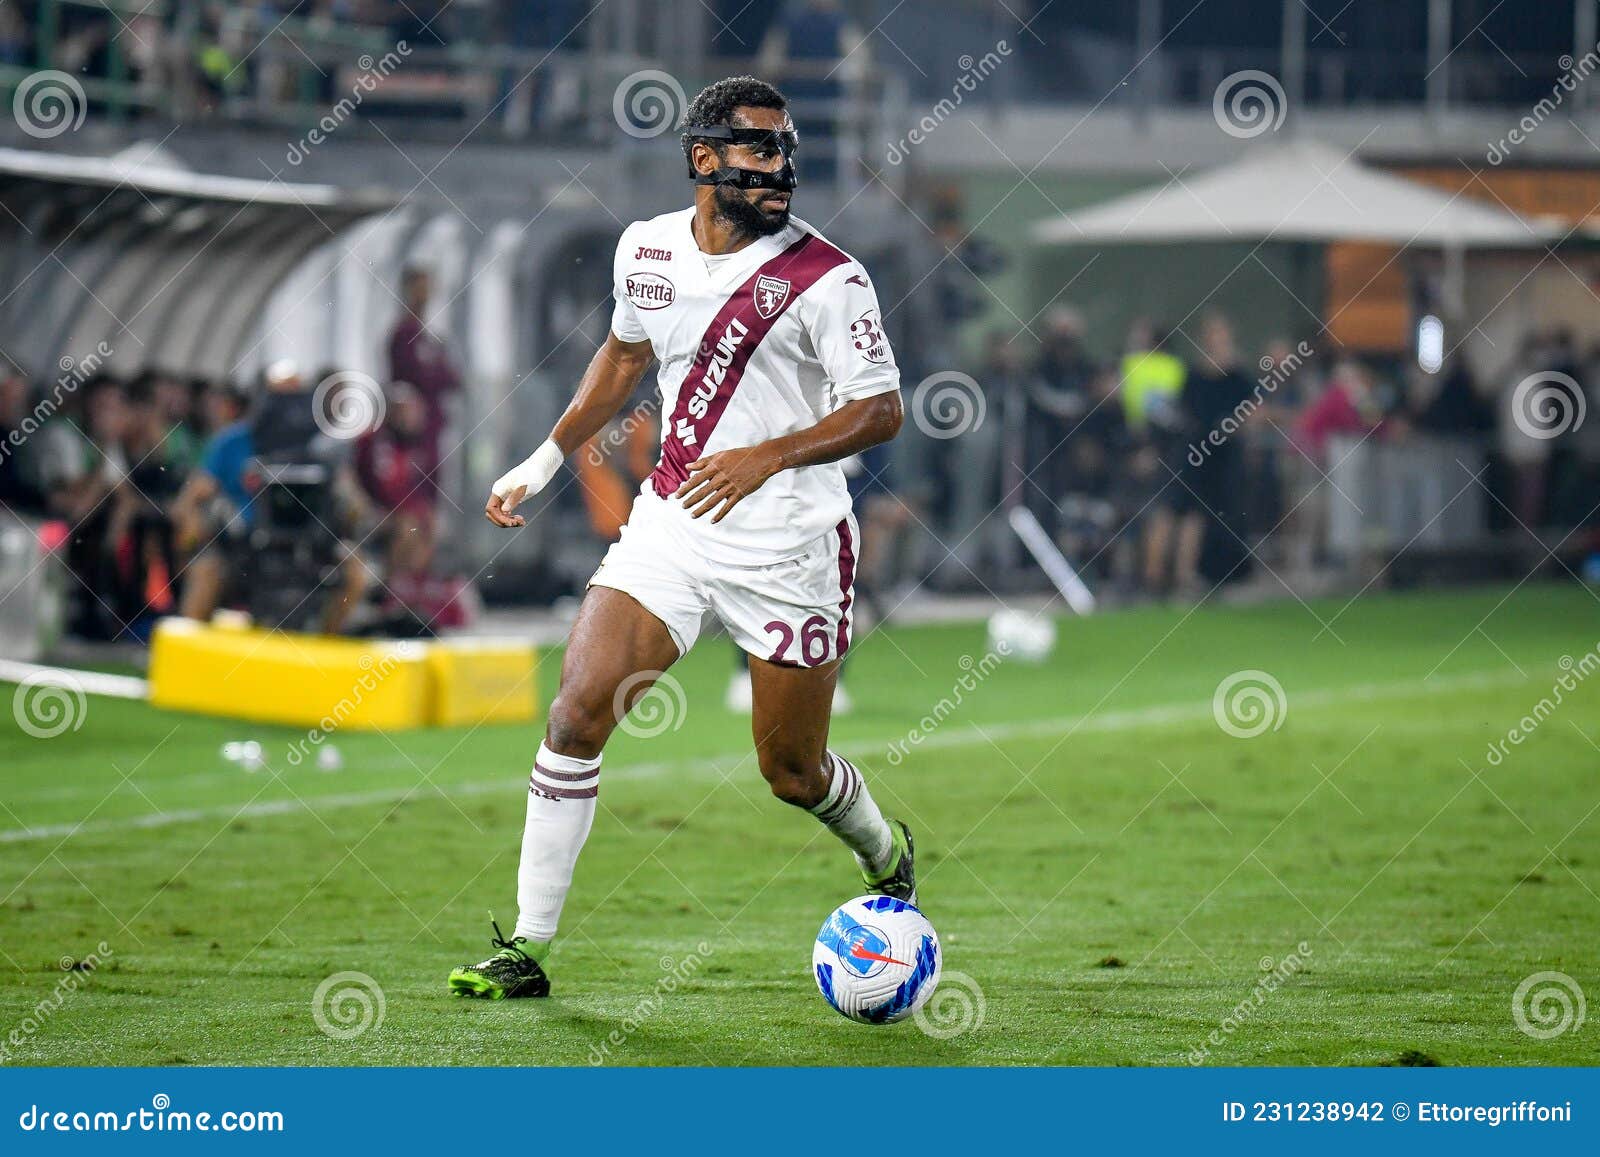 Koffi Djidji (Torino FC) during Torino FC vs SSC Napoli, italian